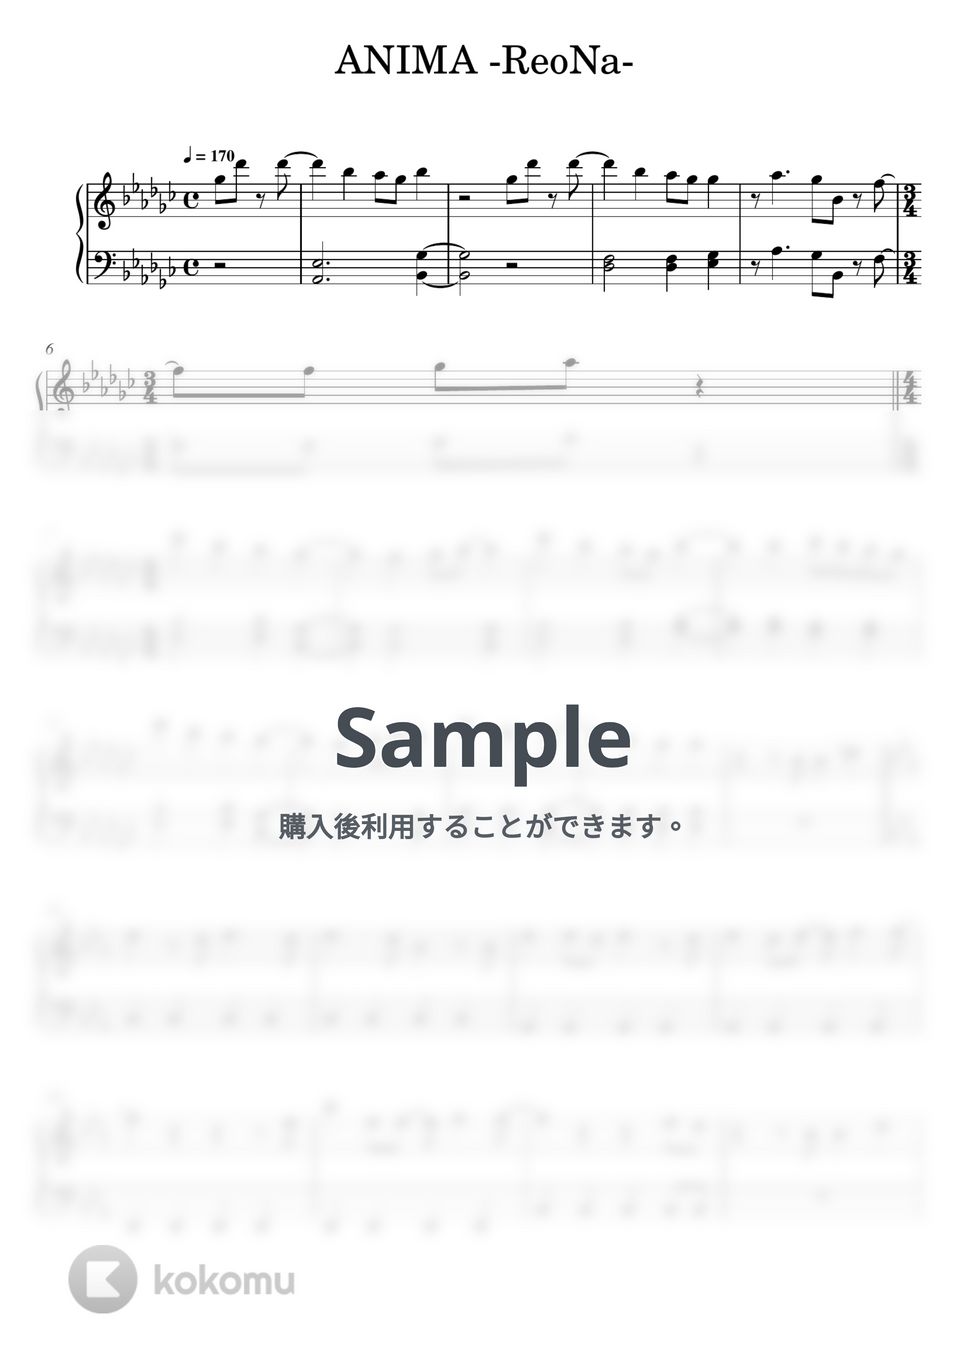 ReoNa - ANIMA (ソードアートオンライン / ピアノ初心者向け / short ver.) by Piano Lovers. jp